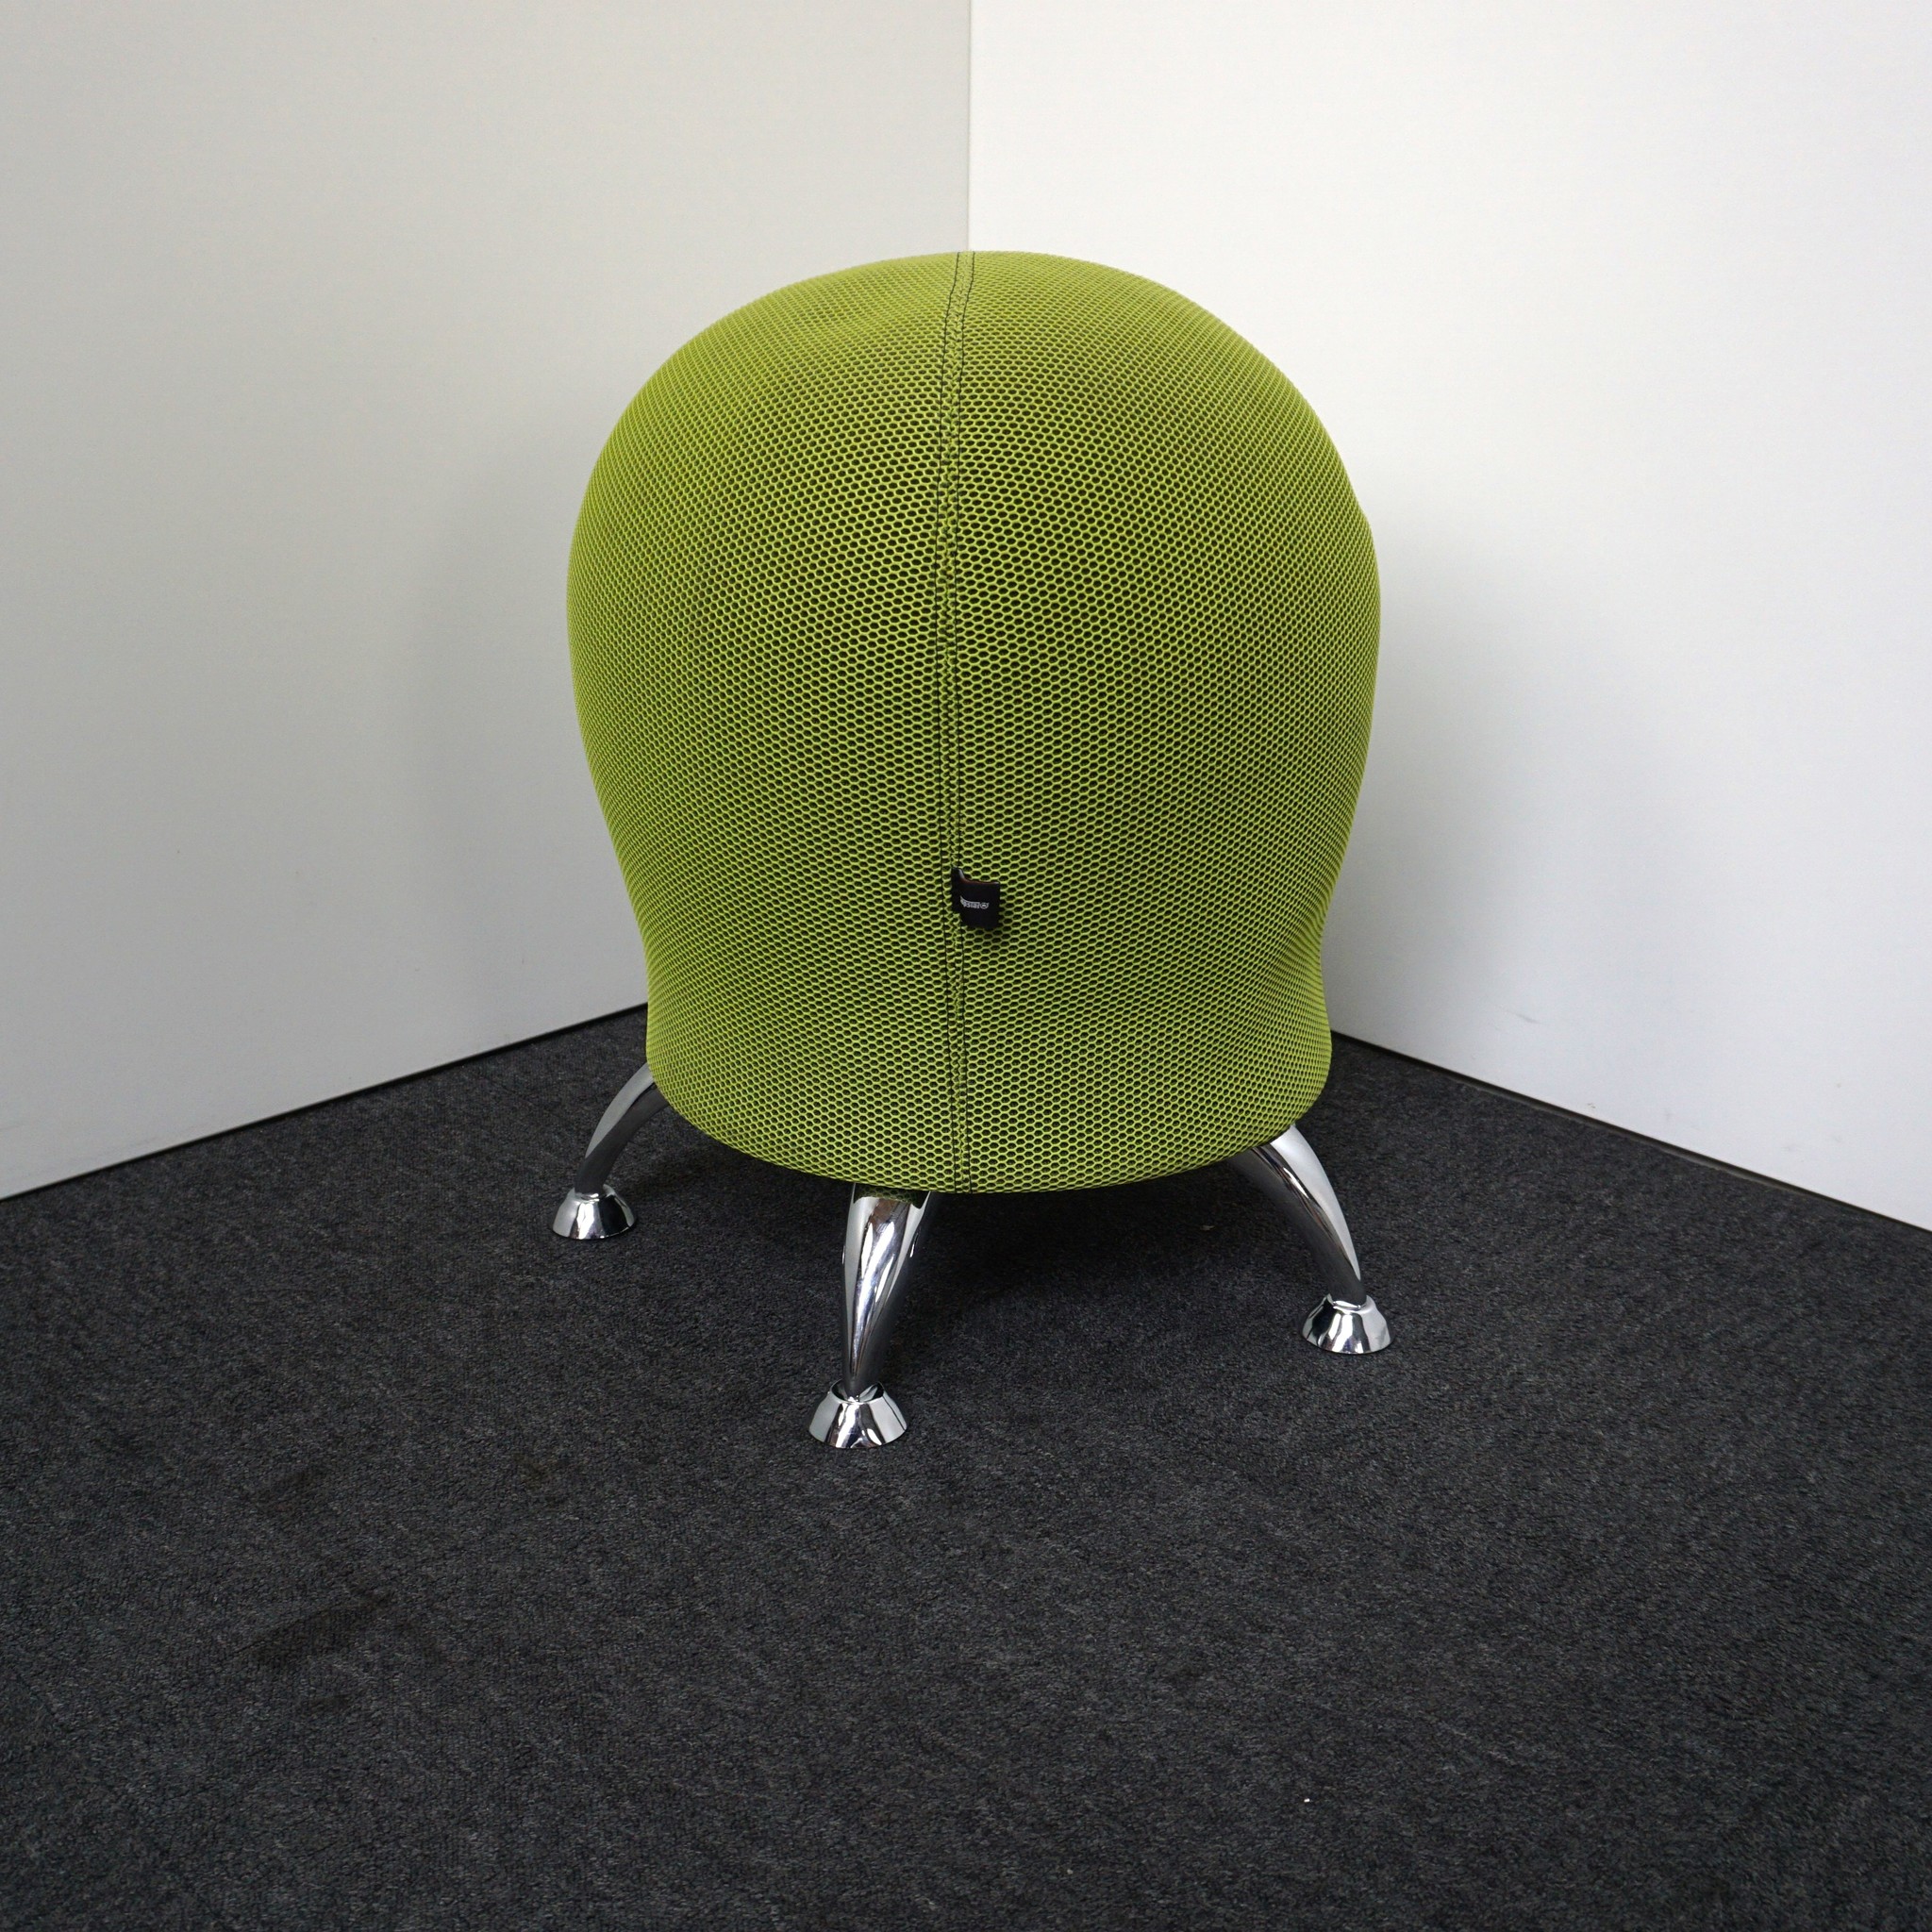 Topstar Sitness | | 5 R&M | Fitness-Hocker Designmöbel - Büro- Grün und Sitzhocker Ergonomischer